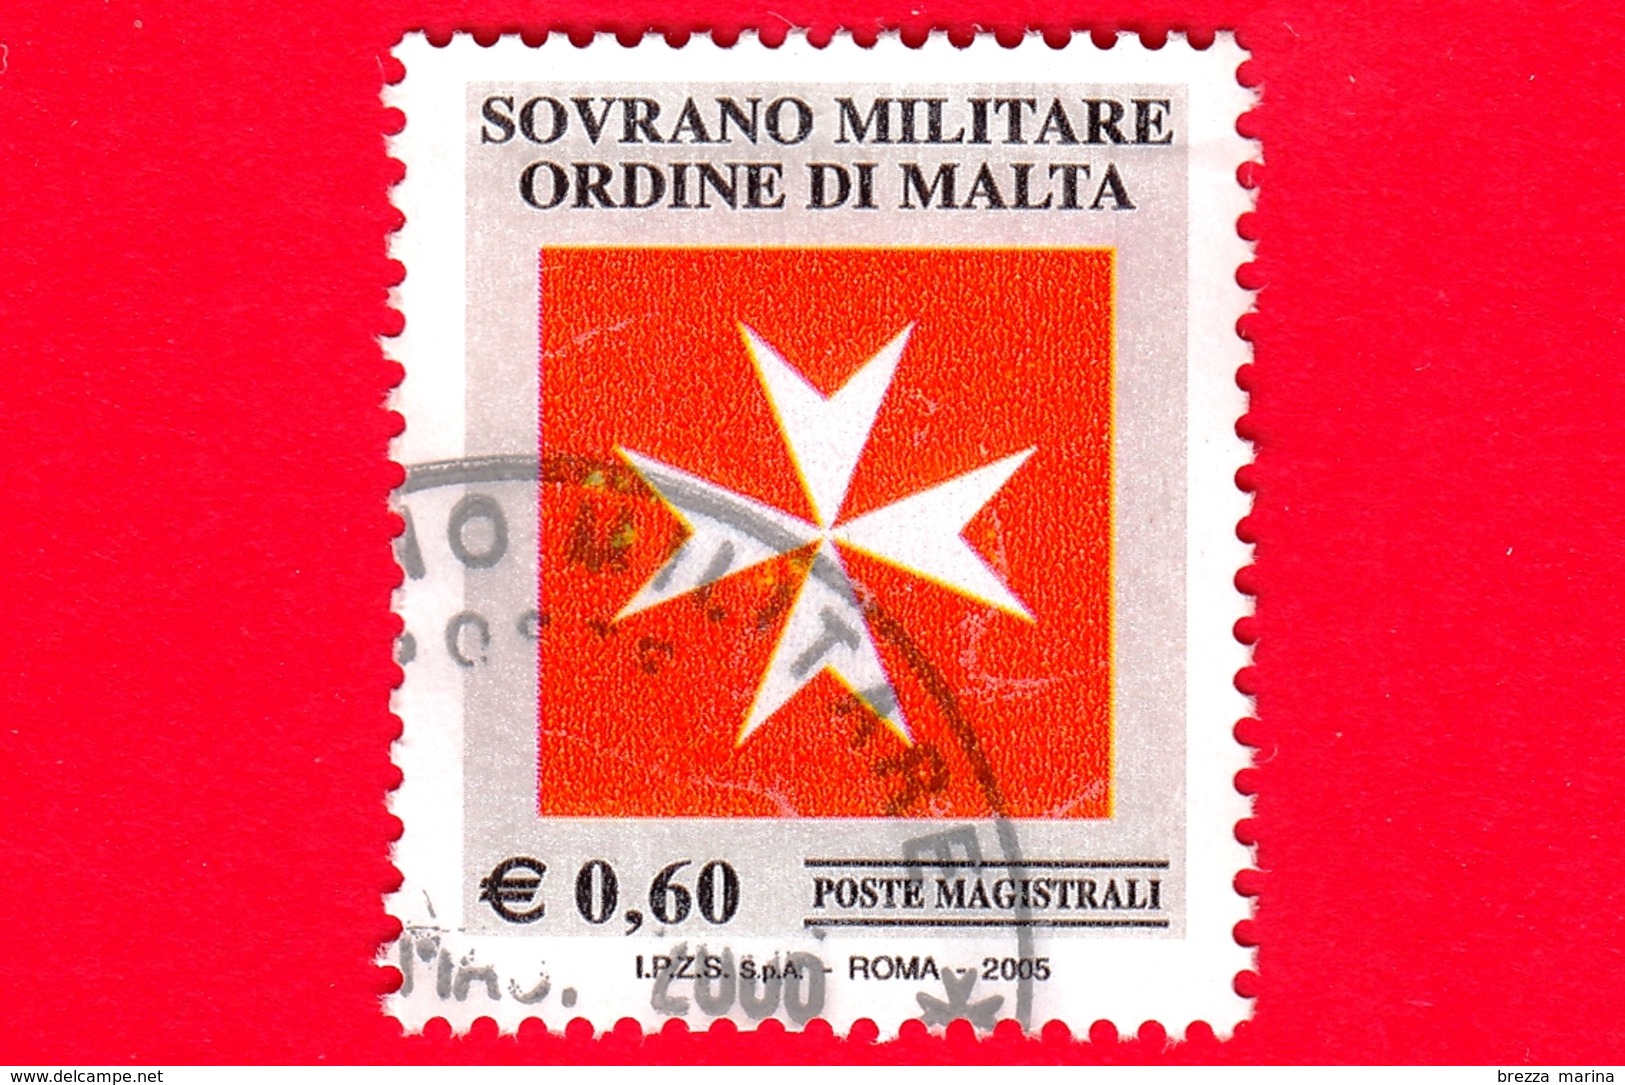 SMOM - Sovrano Militare Ordine Di Malta - Usato - 2005 - Croce Ottagona Bianca Su Fondo Rosso - 0.60 - Sovrano Militare Ordine Di Malta